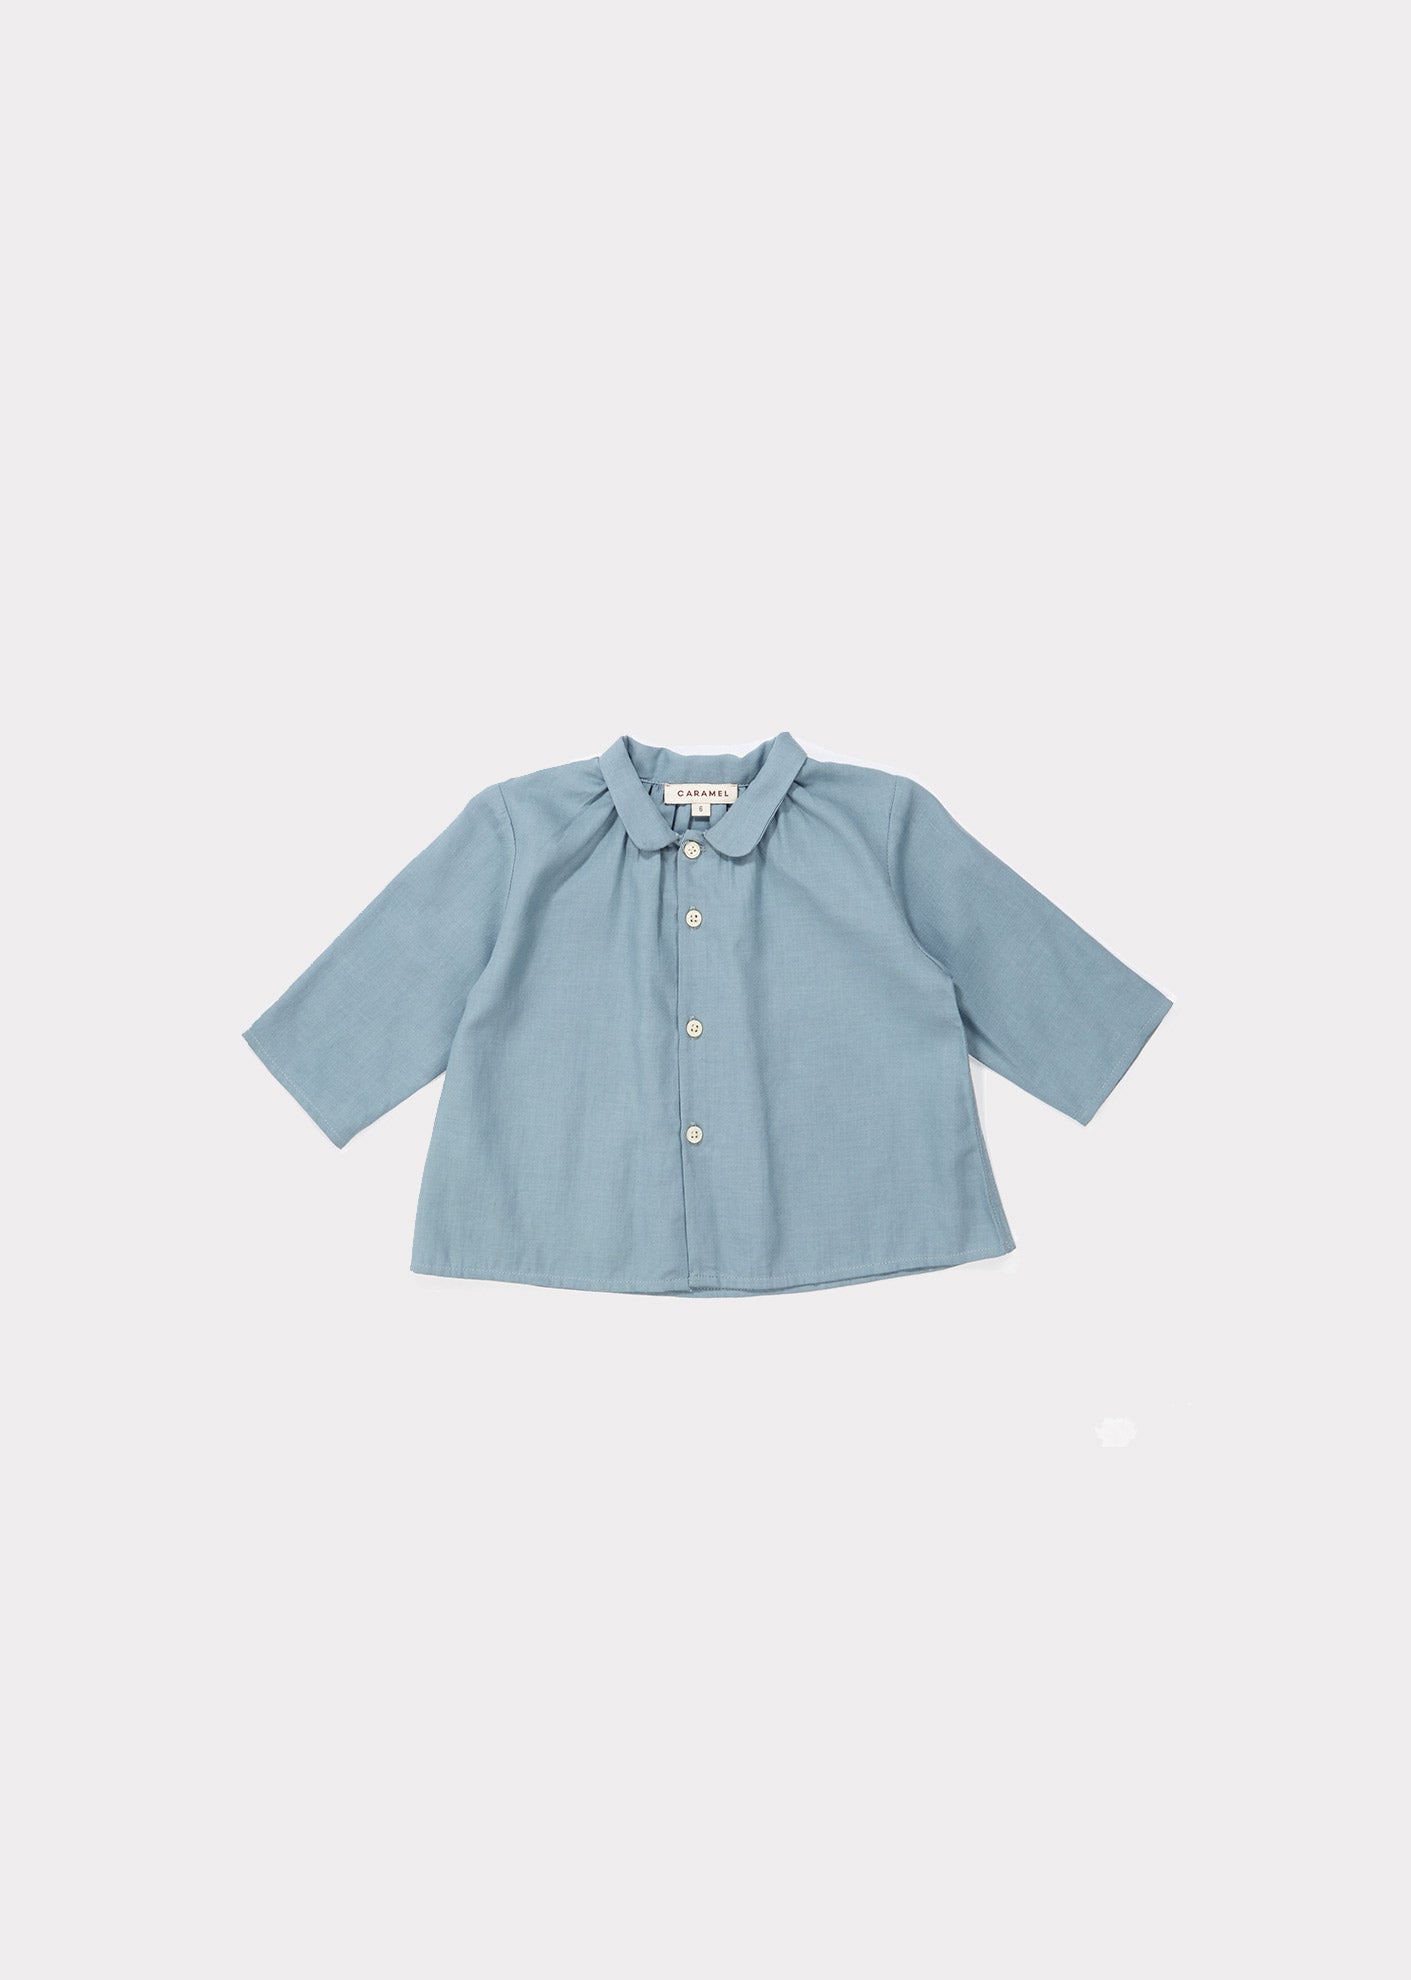 Baby Girls Light Blue Buttons Cotton Shirt